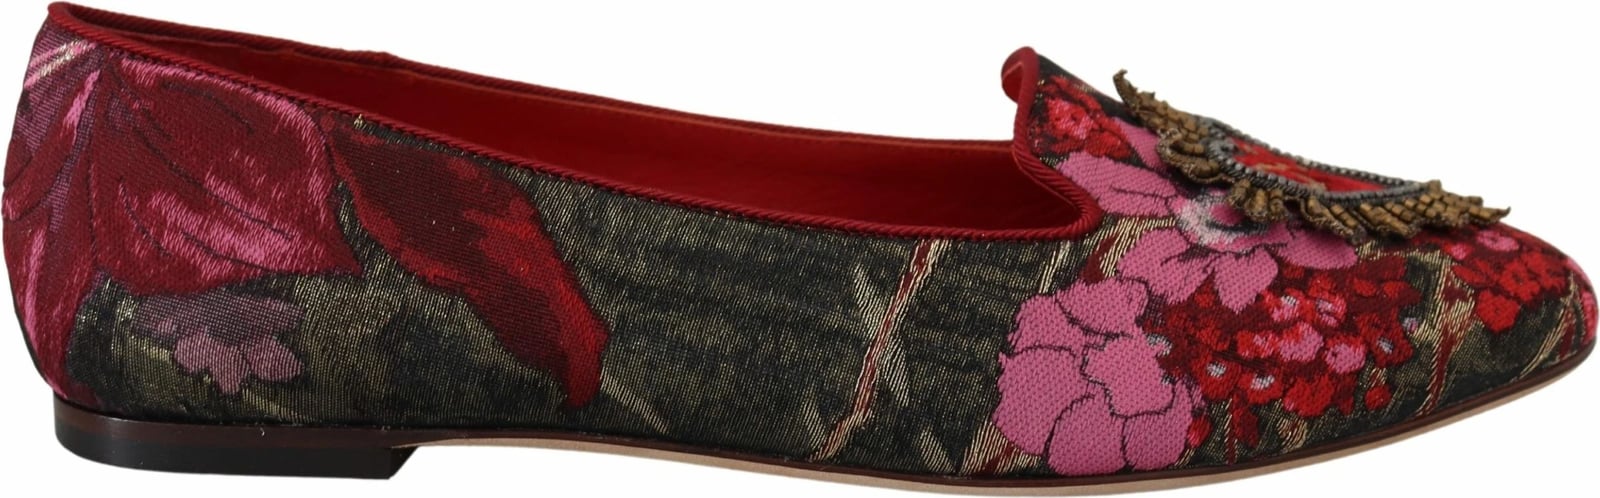 Këpucë për femra Dolce & Gabbana, shumëngjyrëshe 